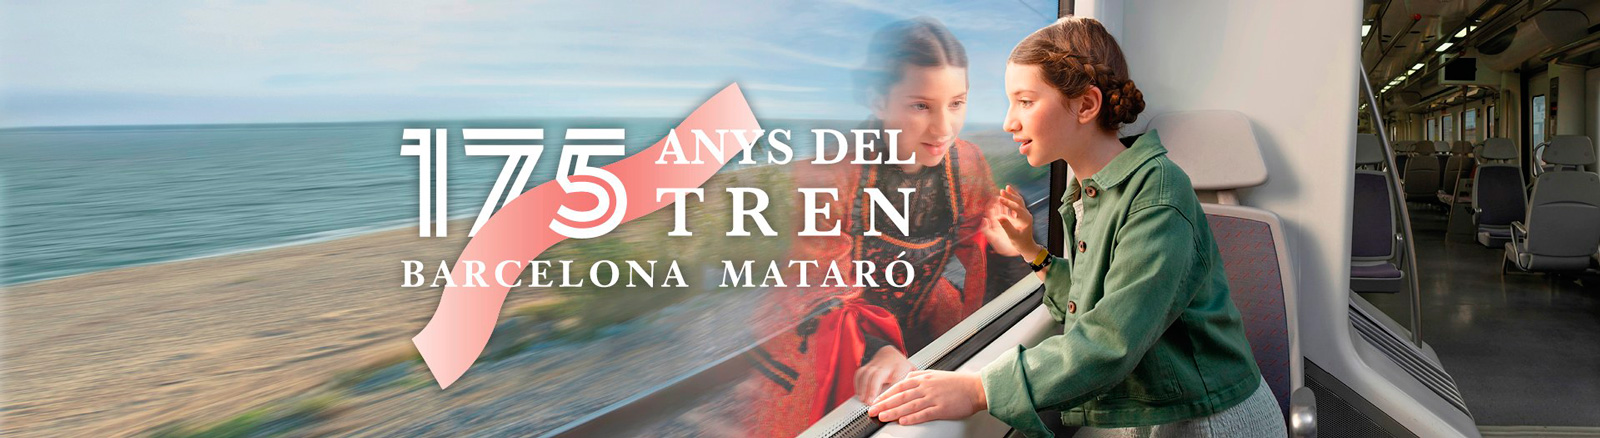 175 anys del  tren Barcelona - Mataró